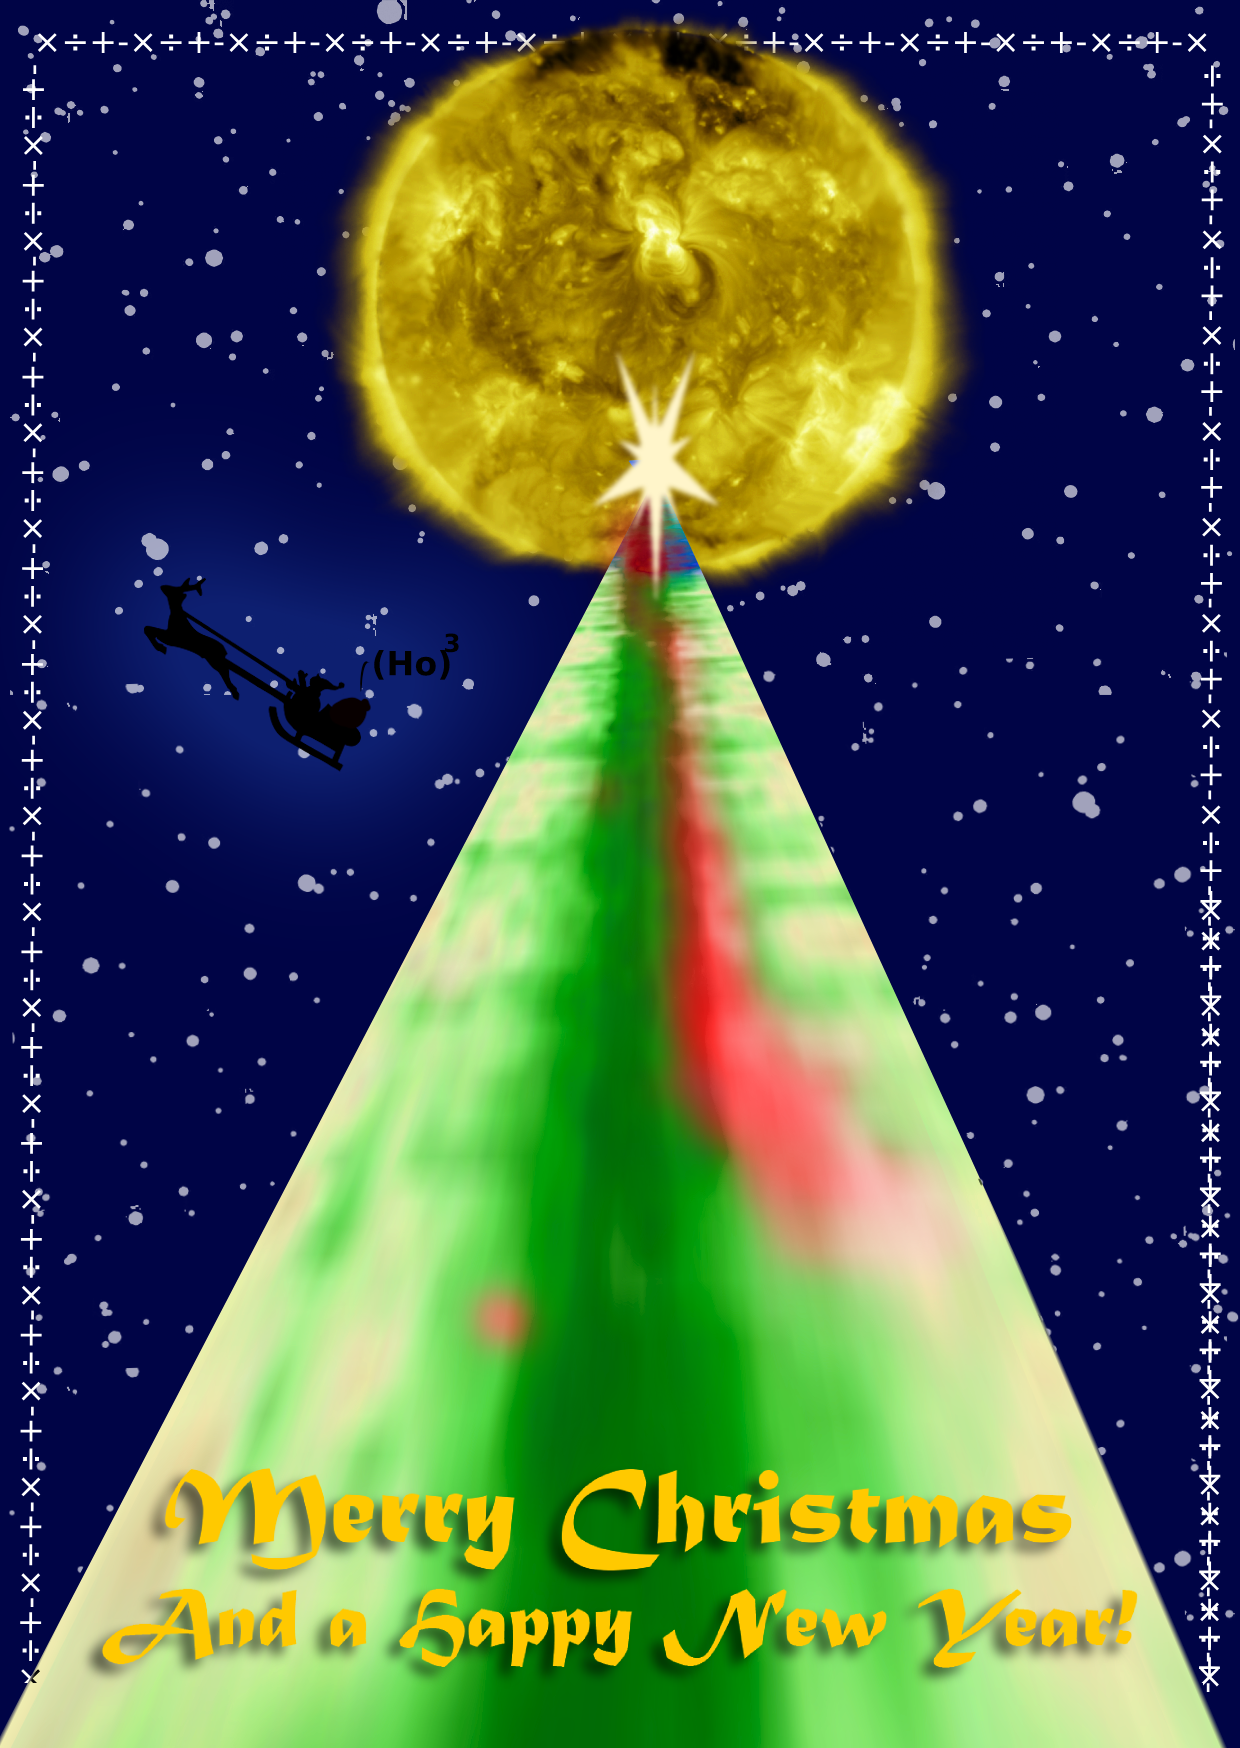 Sun-as-a-star Christmas card